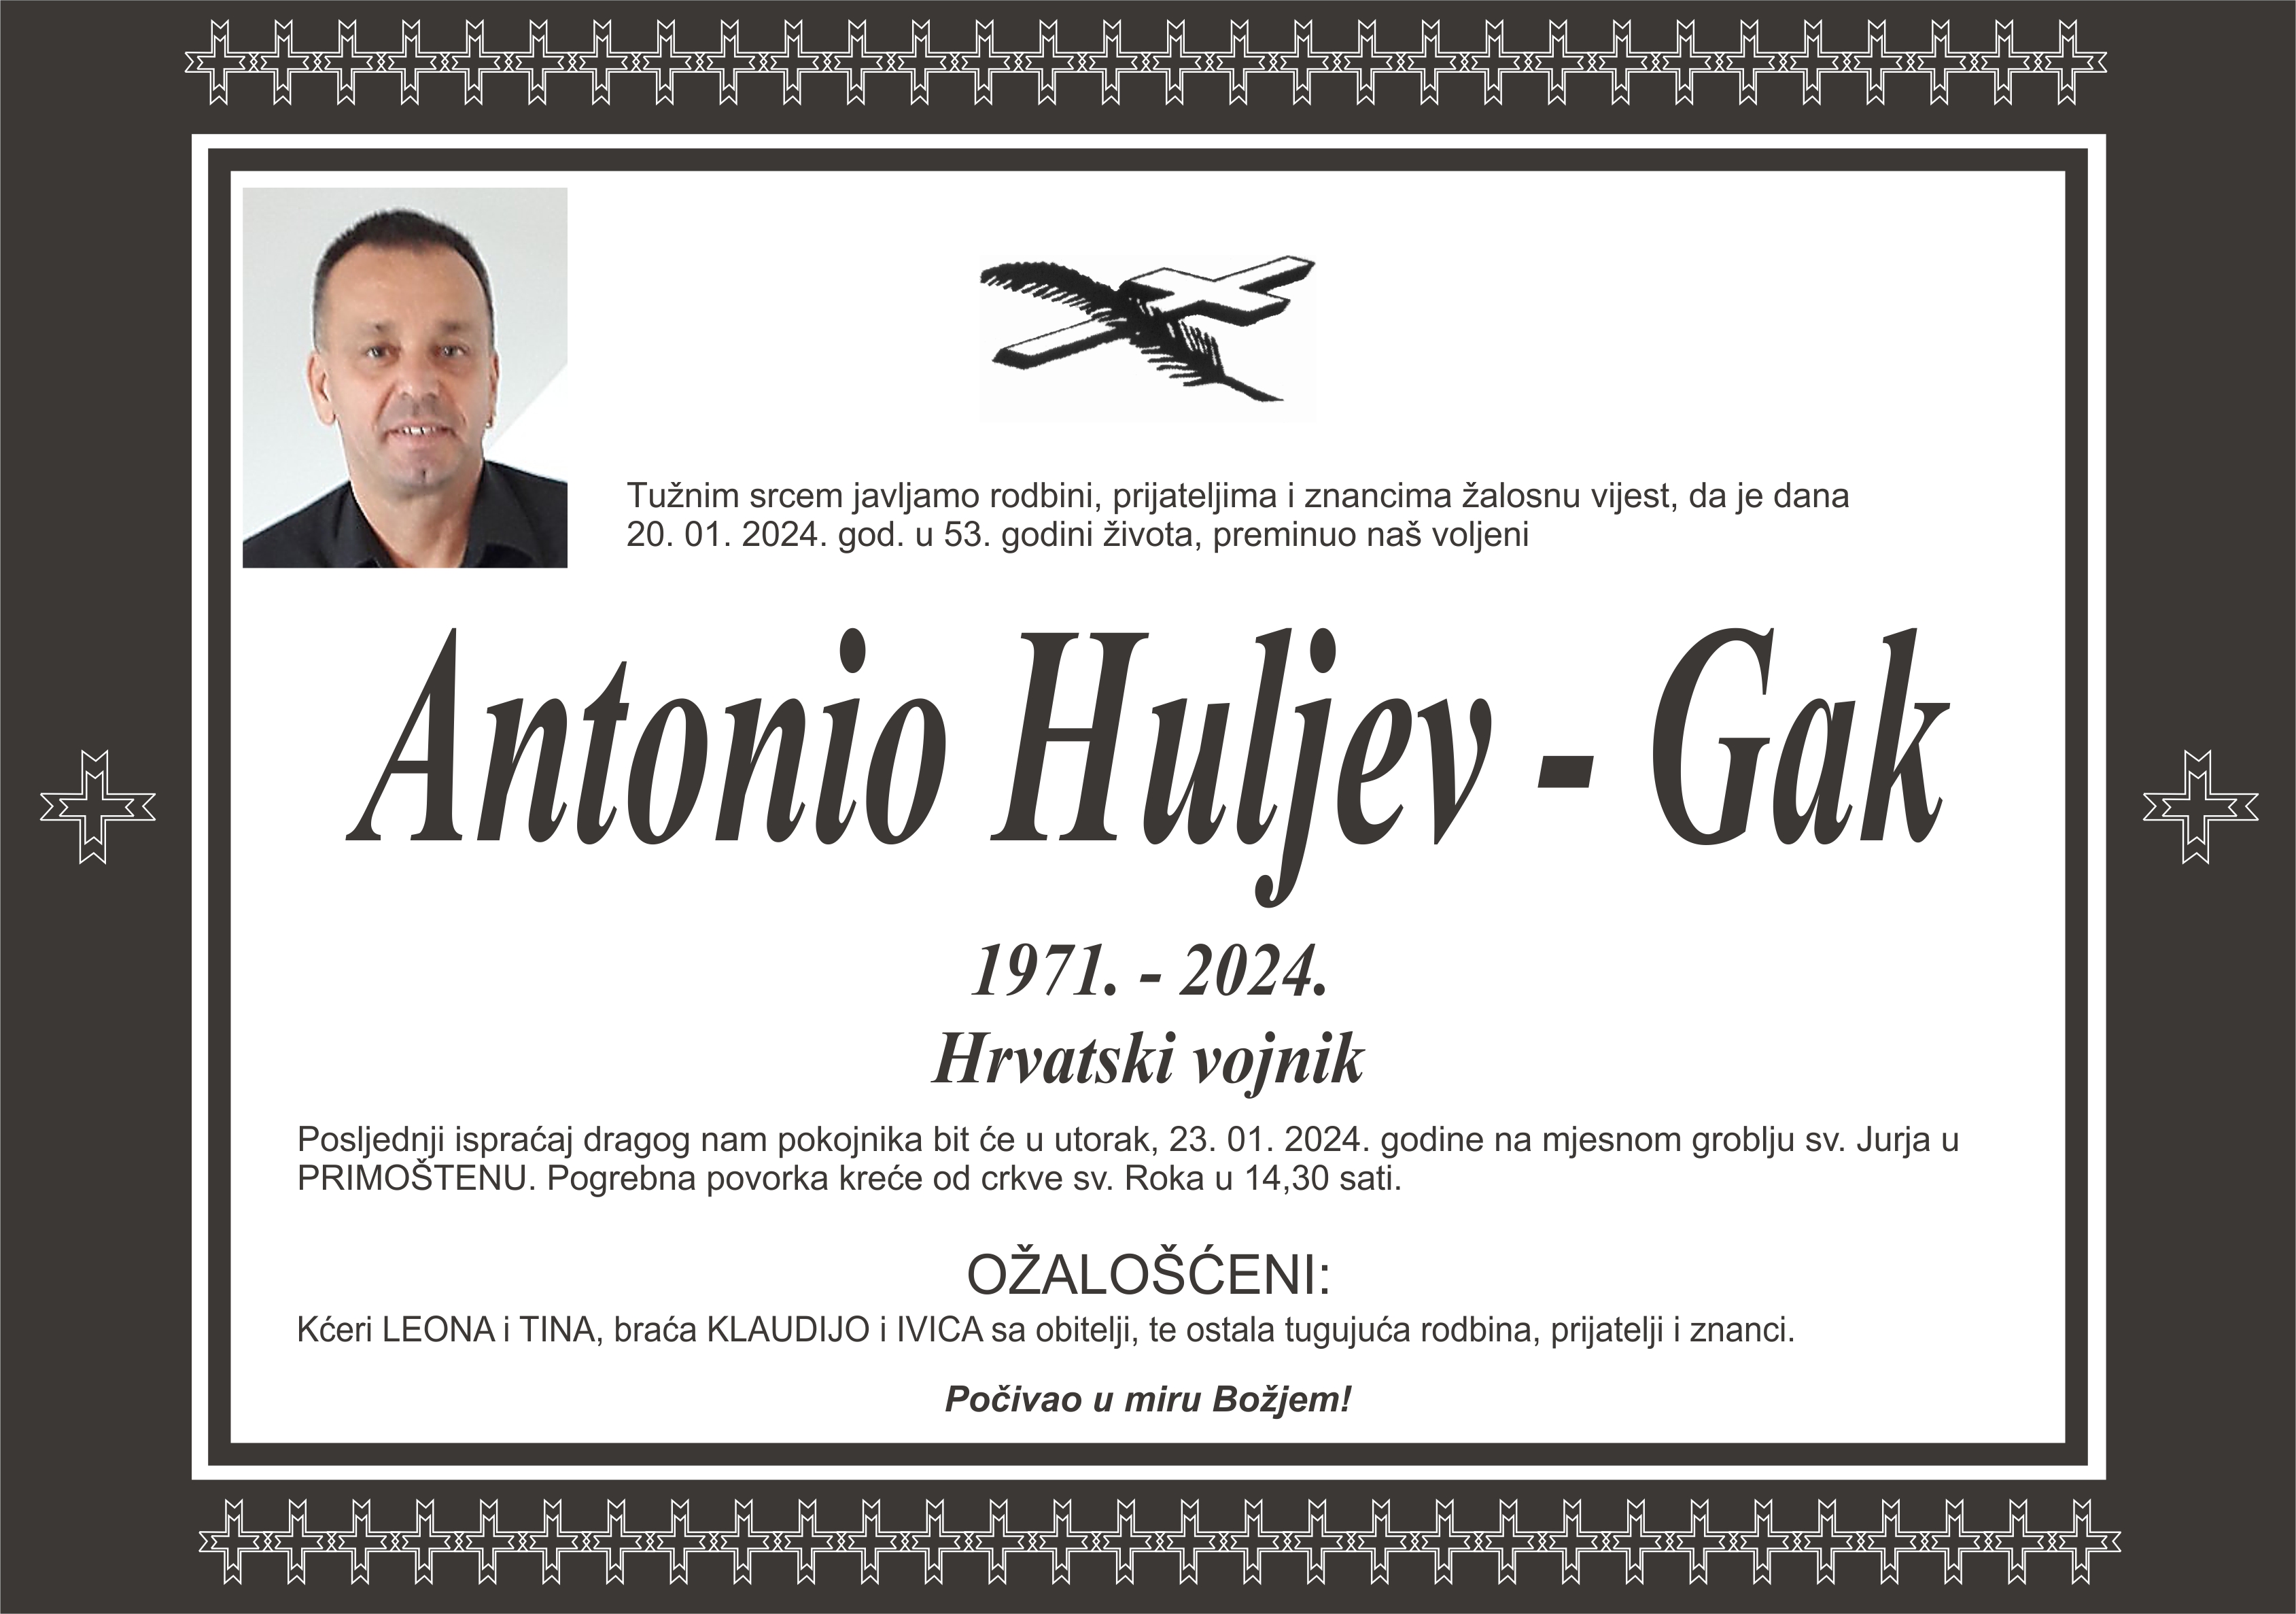 Umro Antonio Huljev - Gak